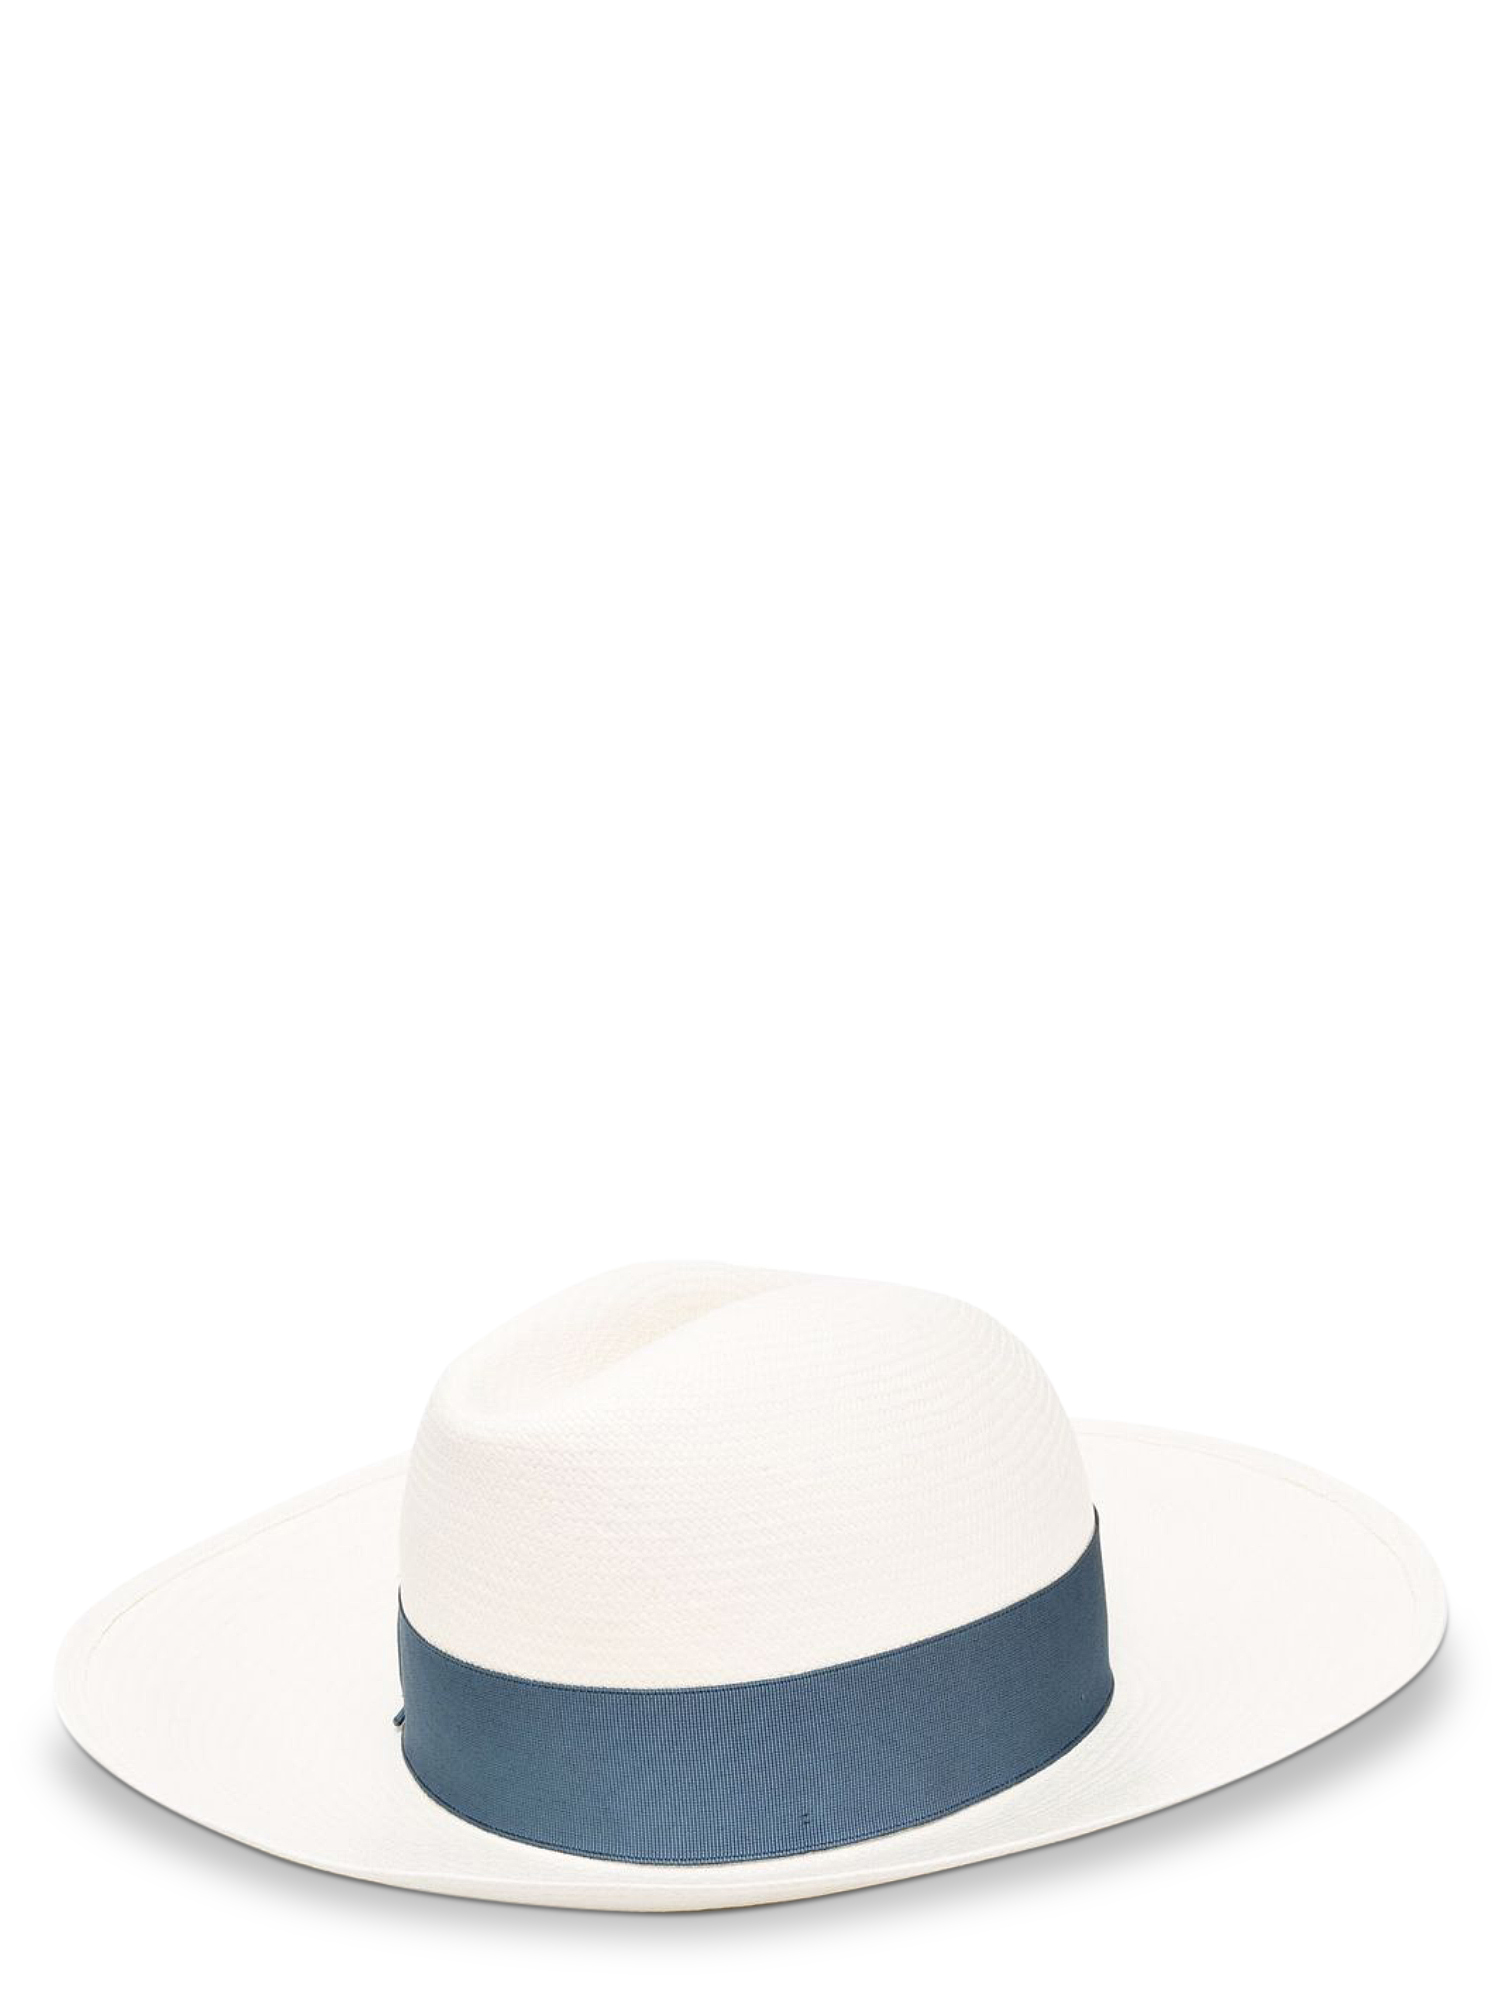 Chapeaux Pour Femme - Borsalino - En Eco-Friendly Fabric Blue - Taille:  -